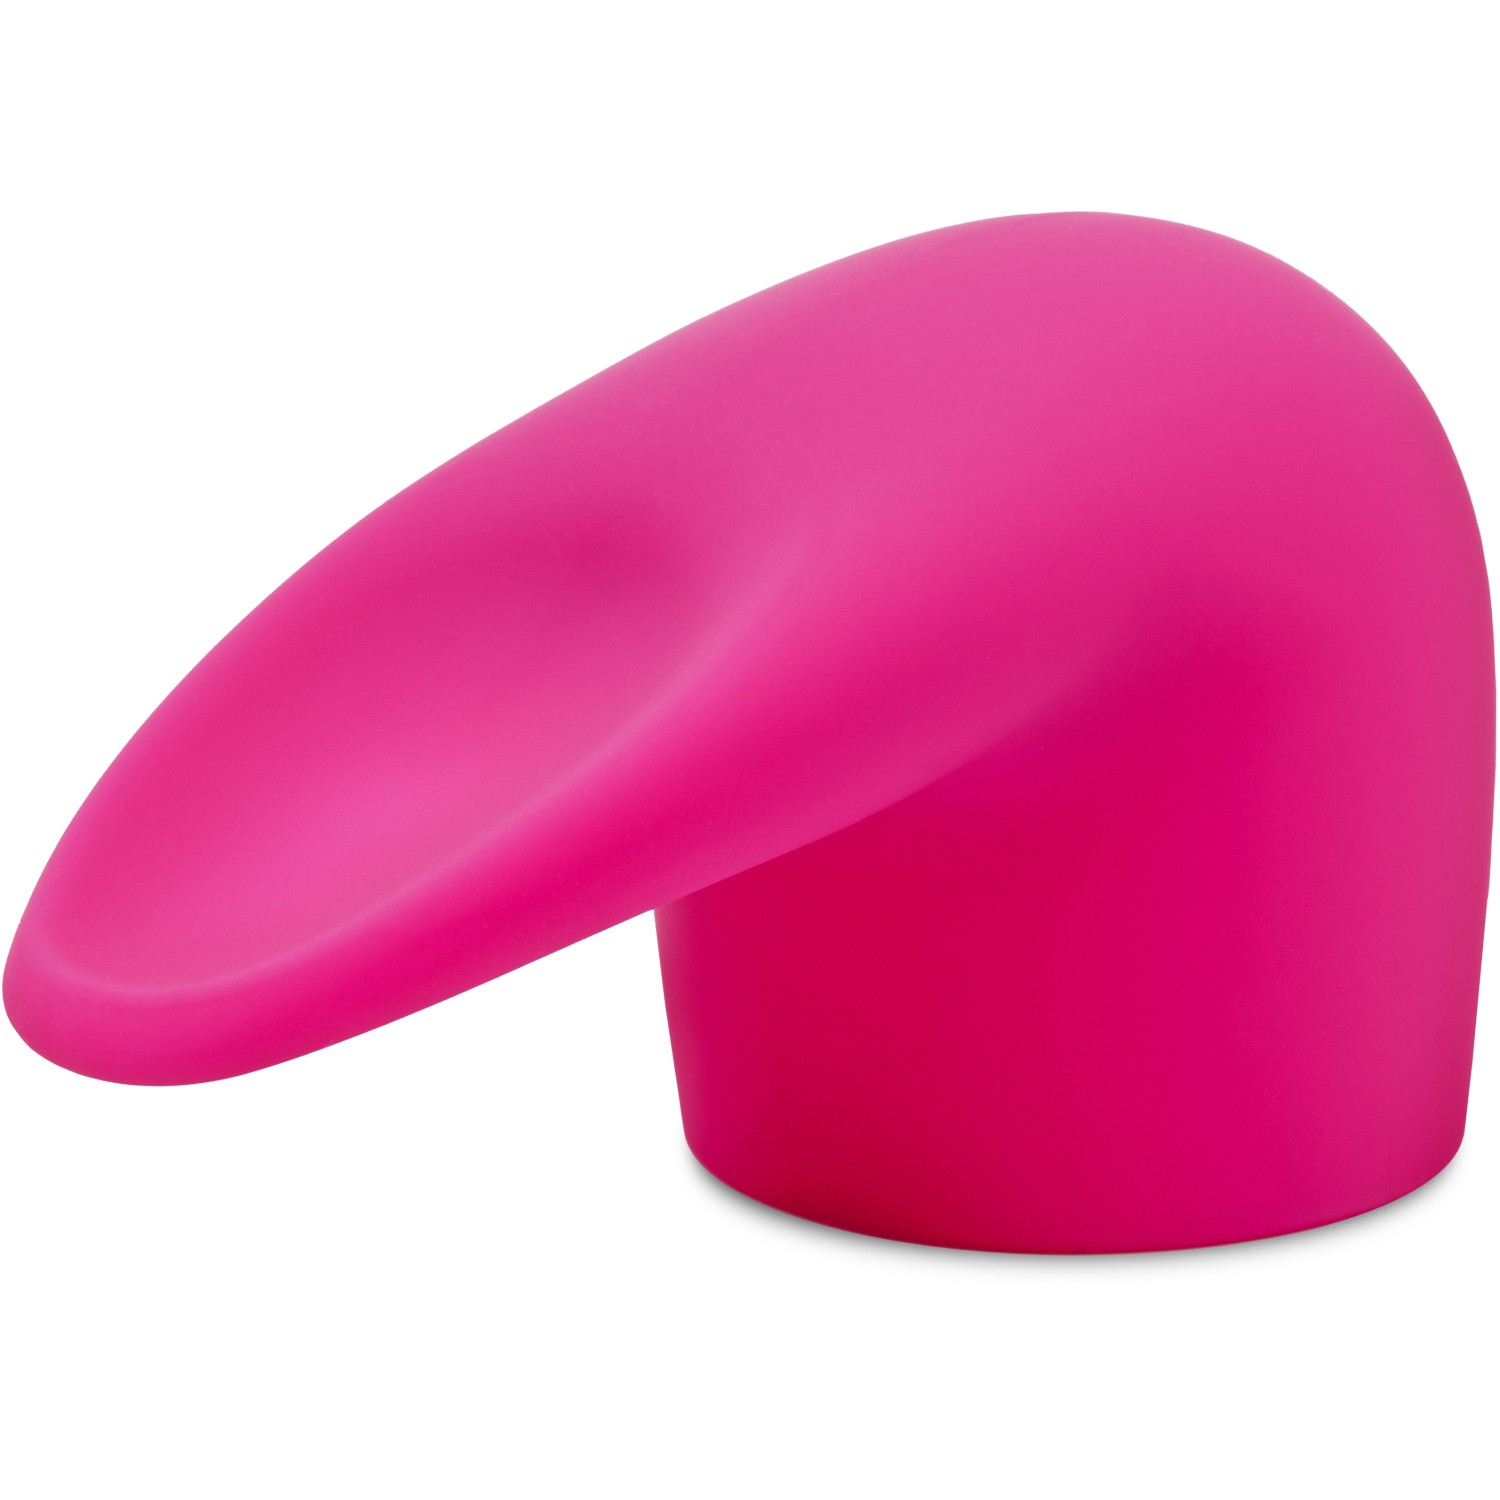 Насадка «Flick» на ванд для имитации орального секса, цвет розовый, Le Wand LW-048, из материала Силикон, длина 14 см.